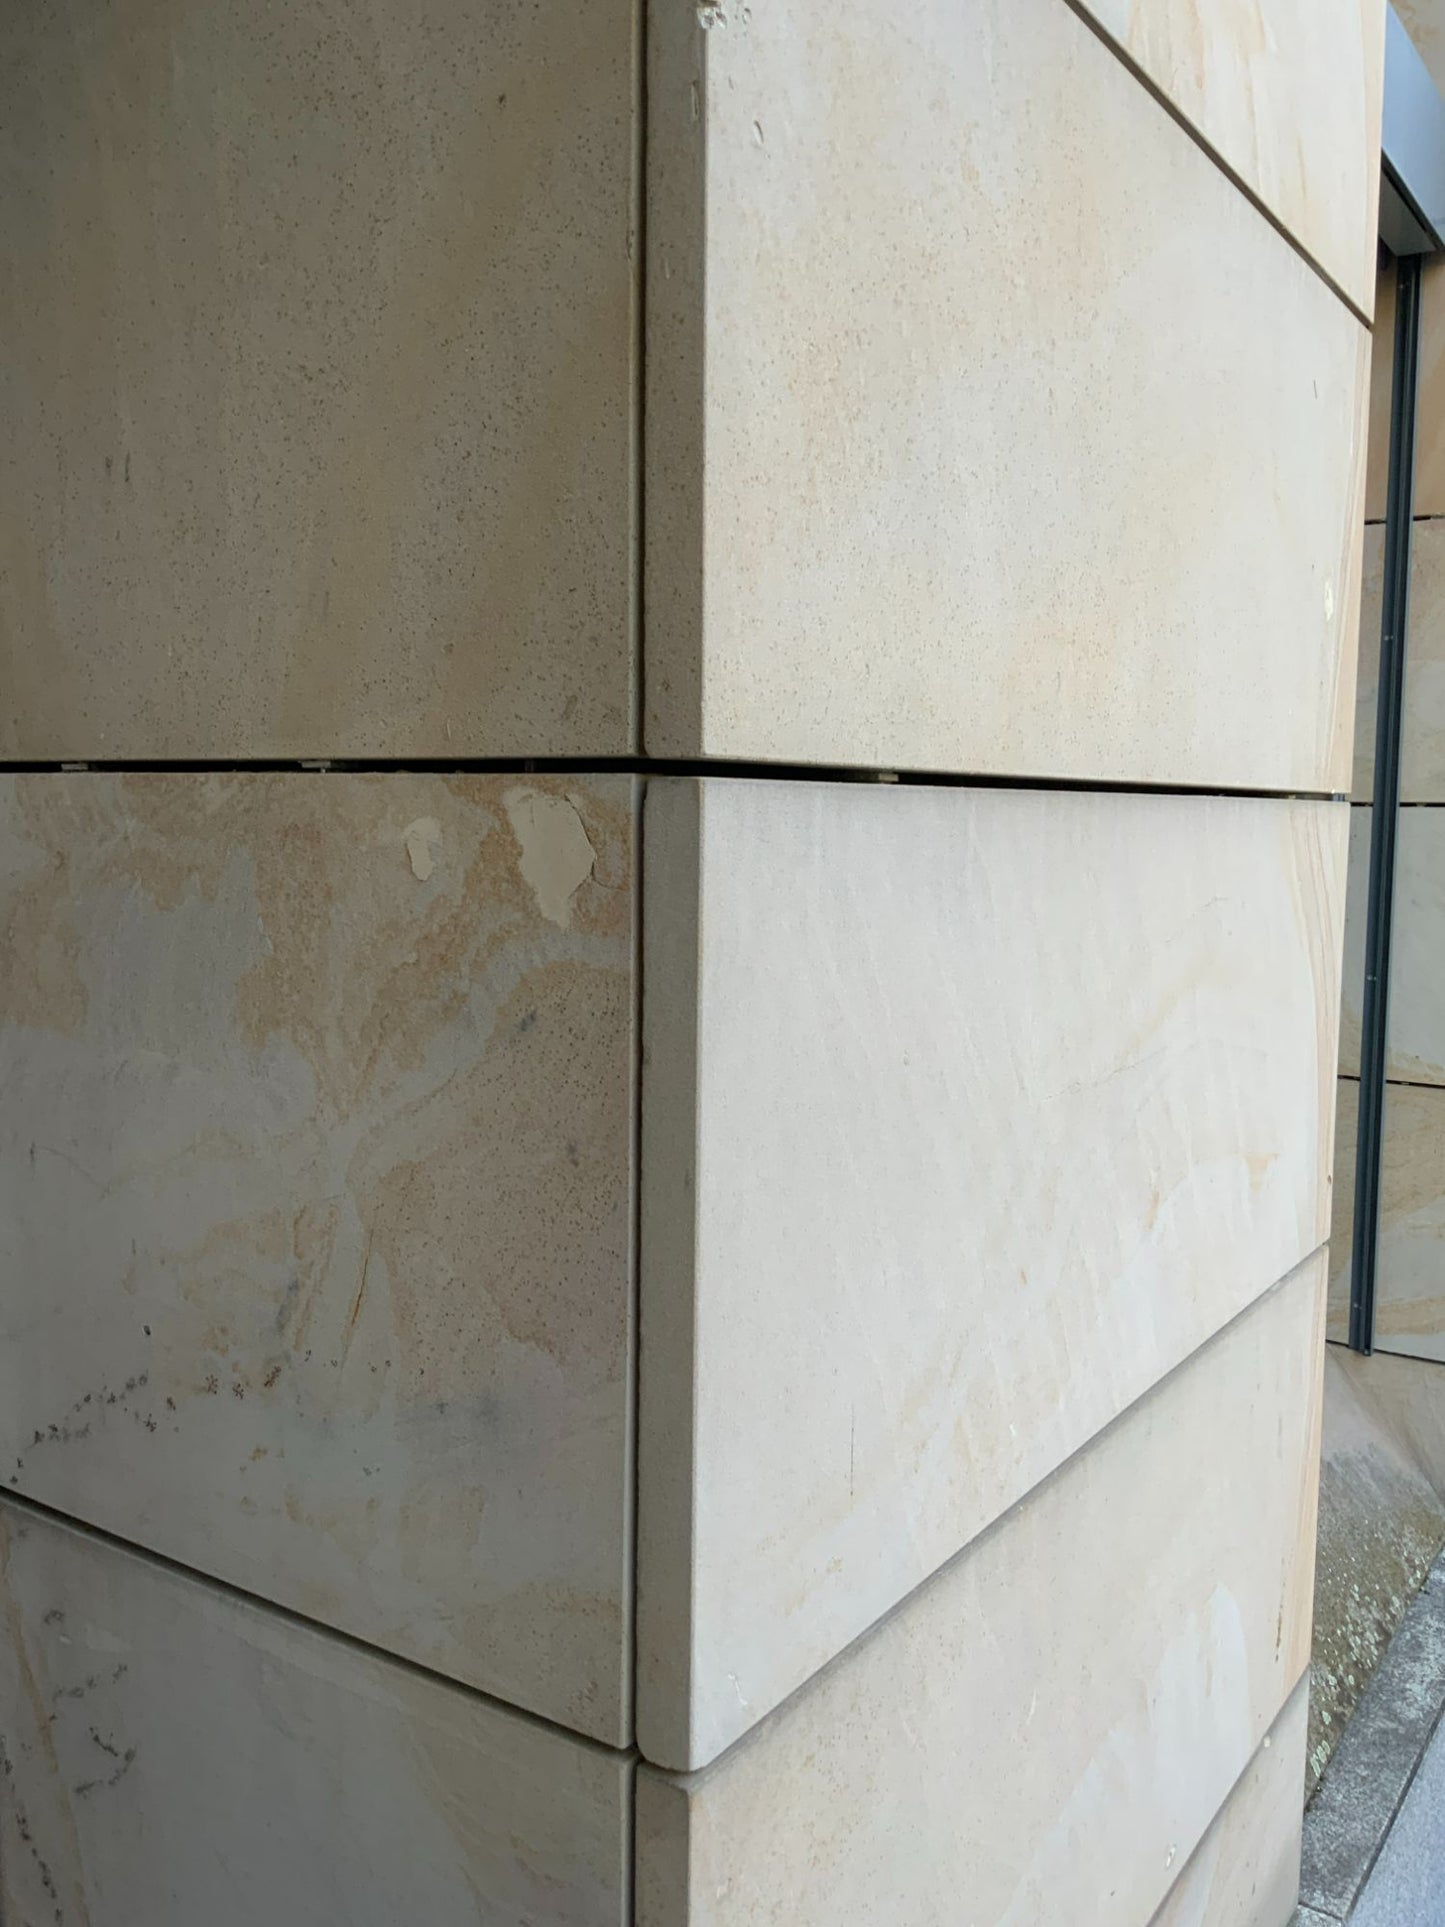 Vorgehängte Außenwandbekleidung - Natursteinplatten , einseitige Abkantung1860x580x40